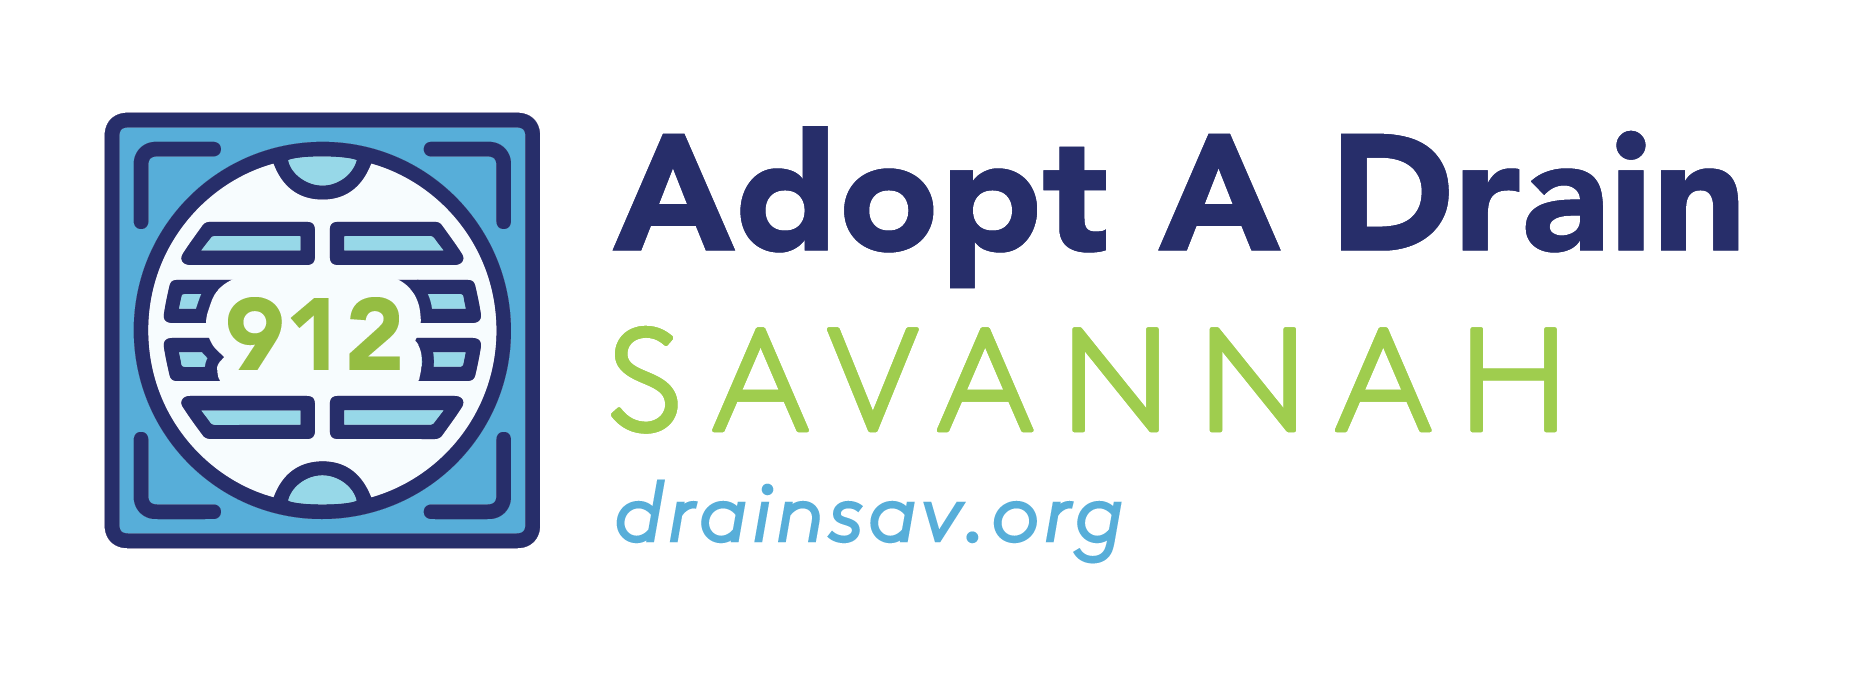 Adopt-a-Drain Savannah